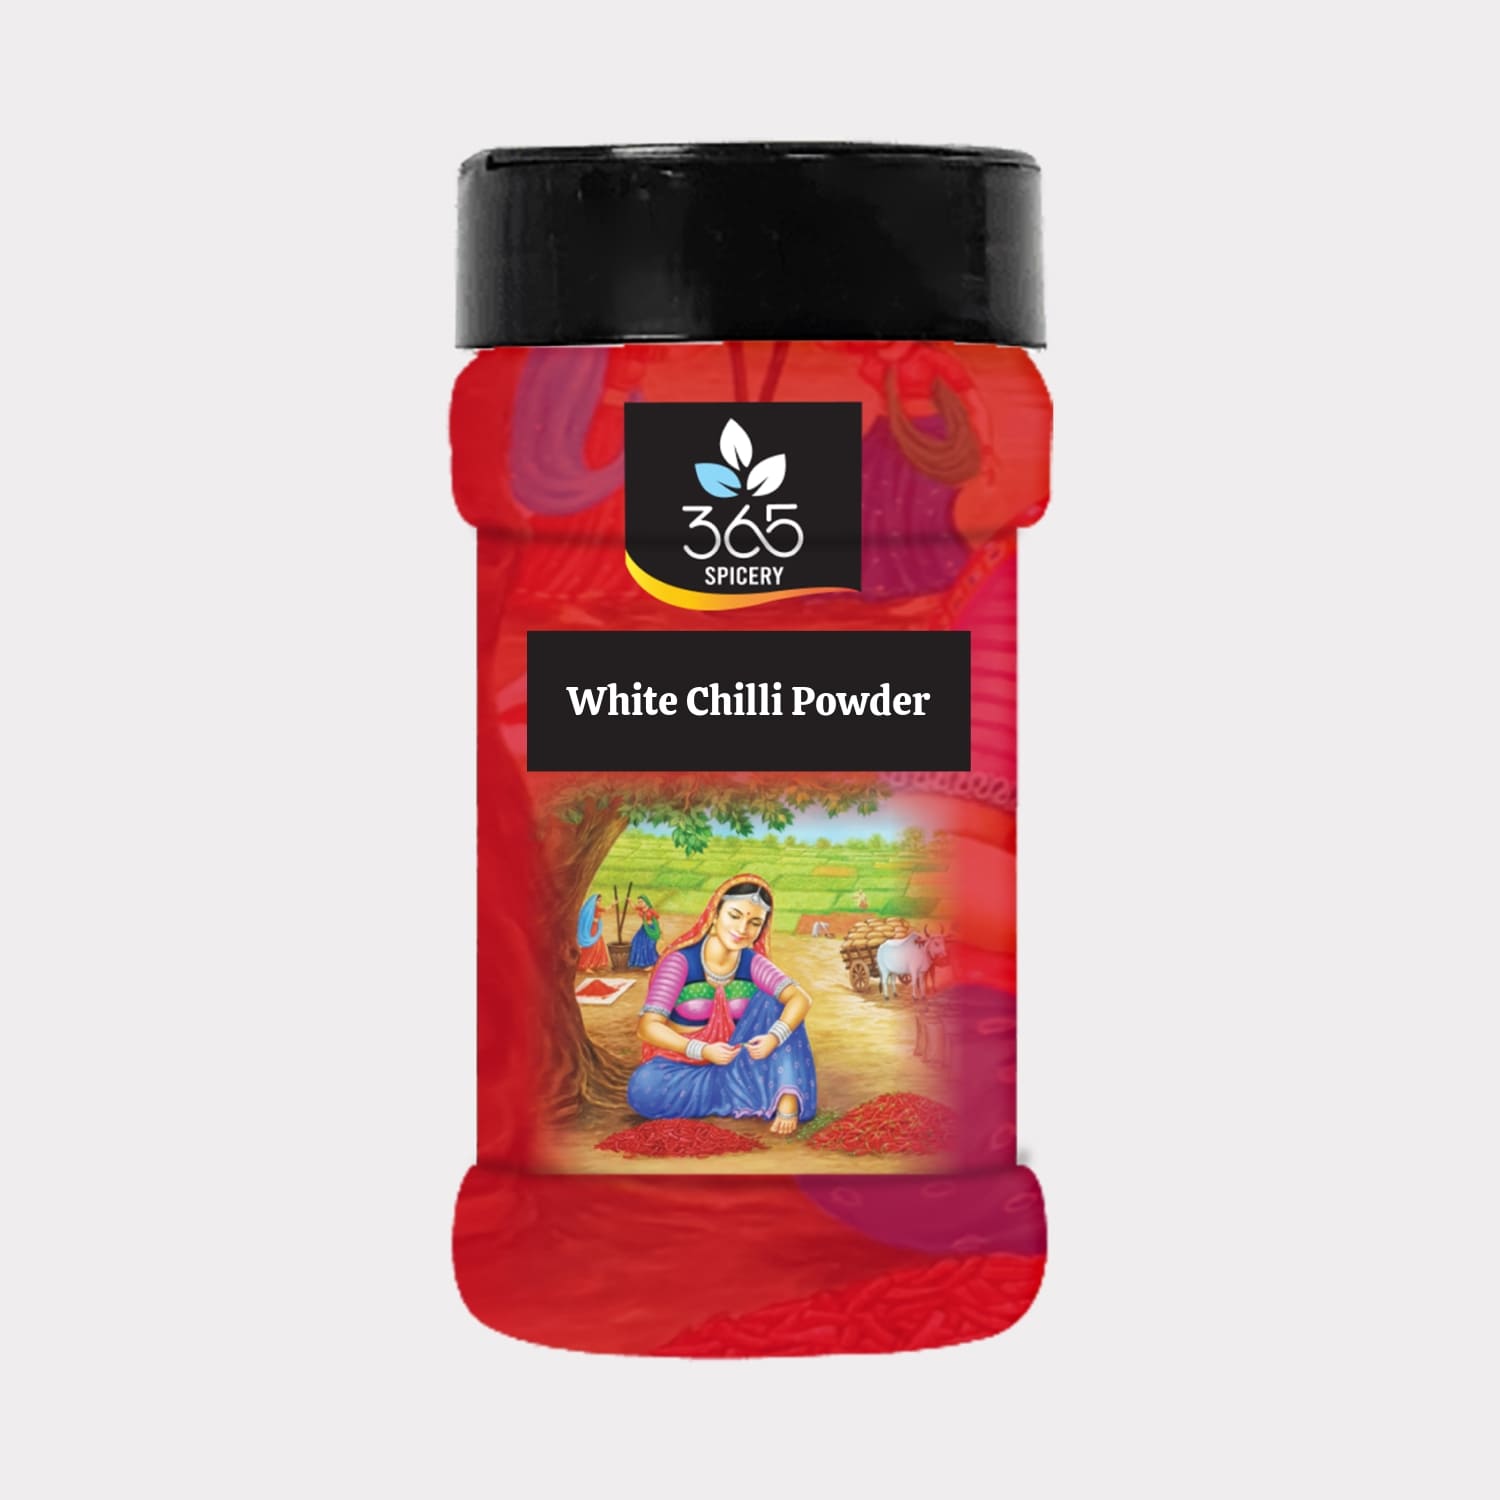 White Chilli Powder